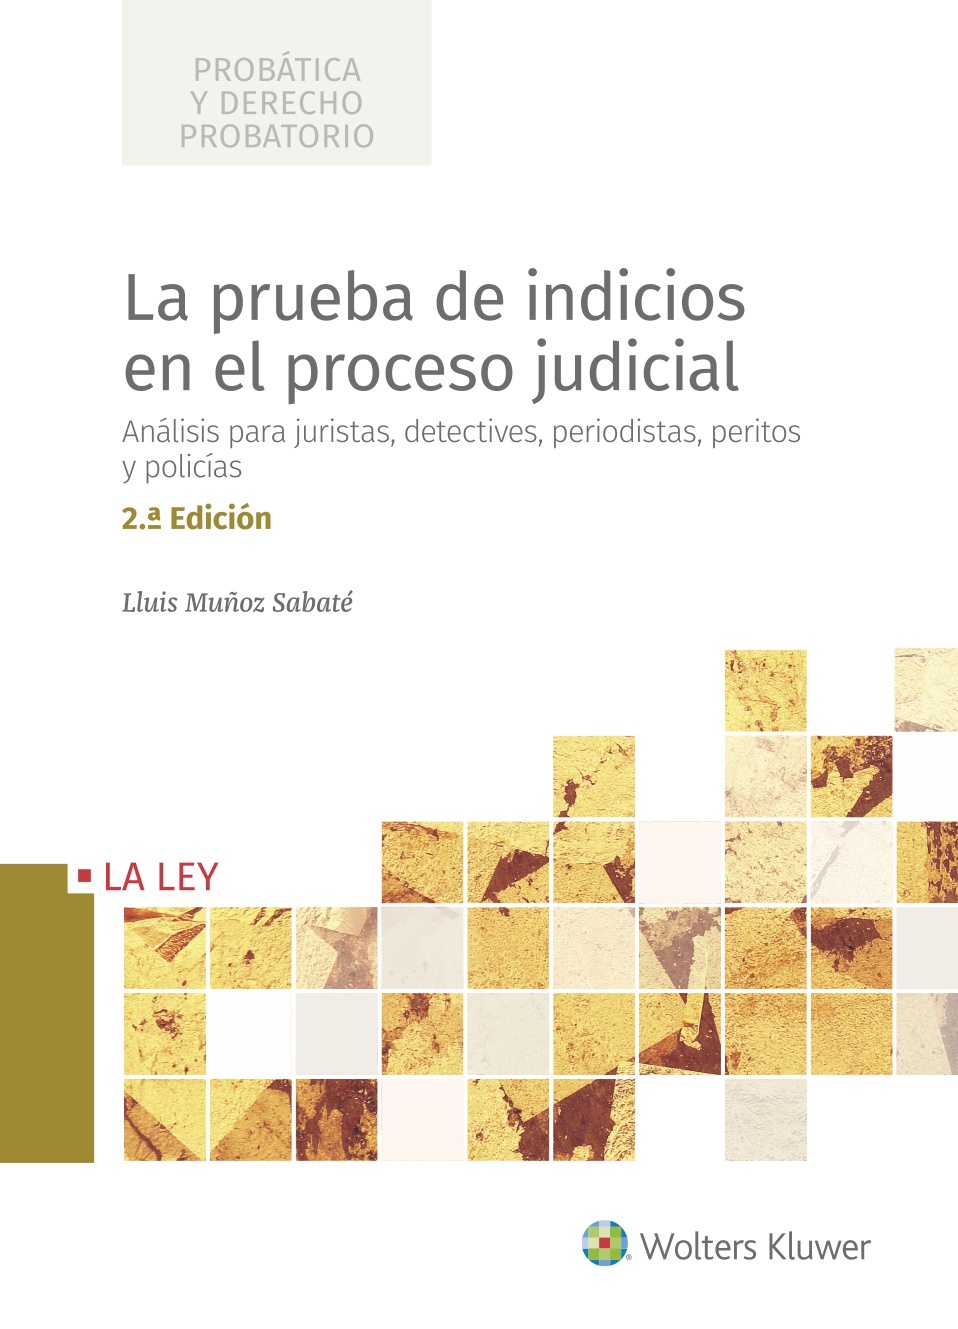 La prueba de indicios en el proceso judicial   «Análisis para juristas, detectives, periodistas, peritos y policías»